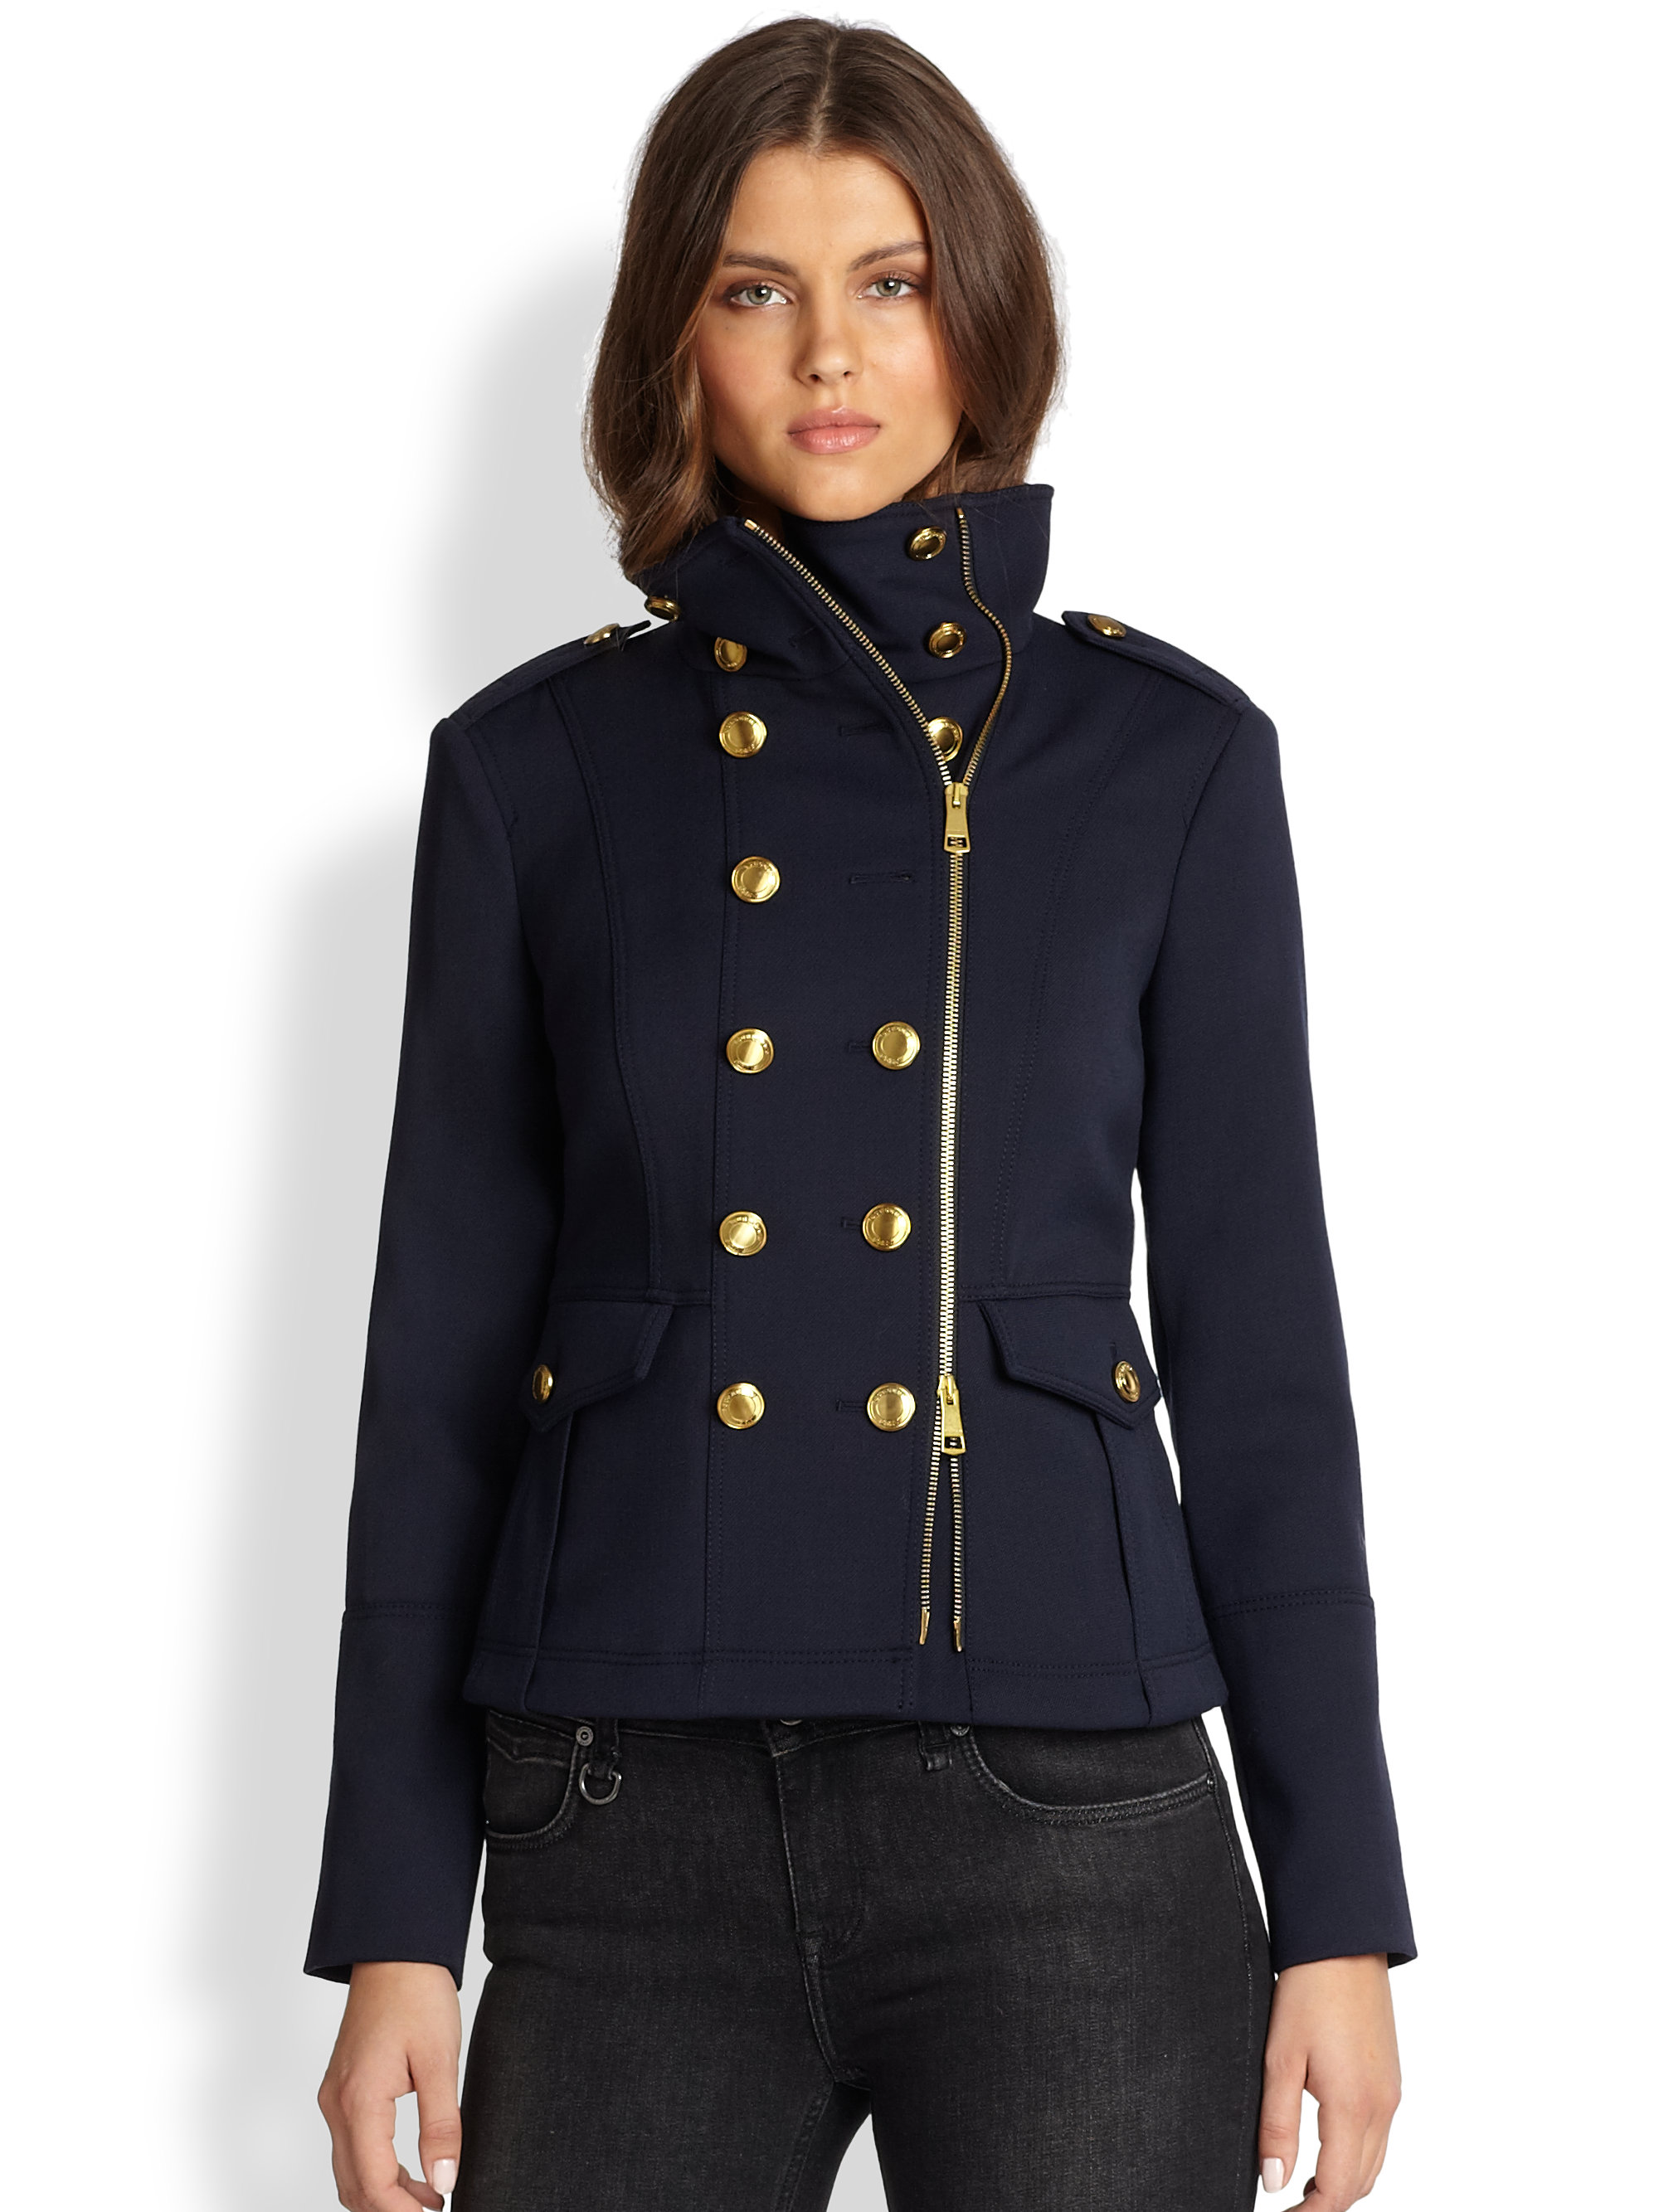 Actualizar 59+ imagen burberry navy jacket womens - Abzlocal.mx